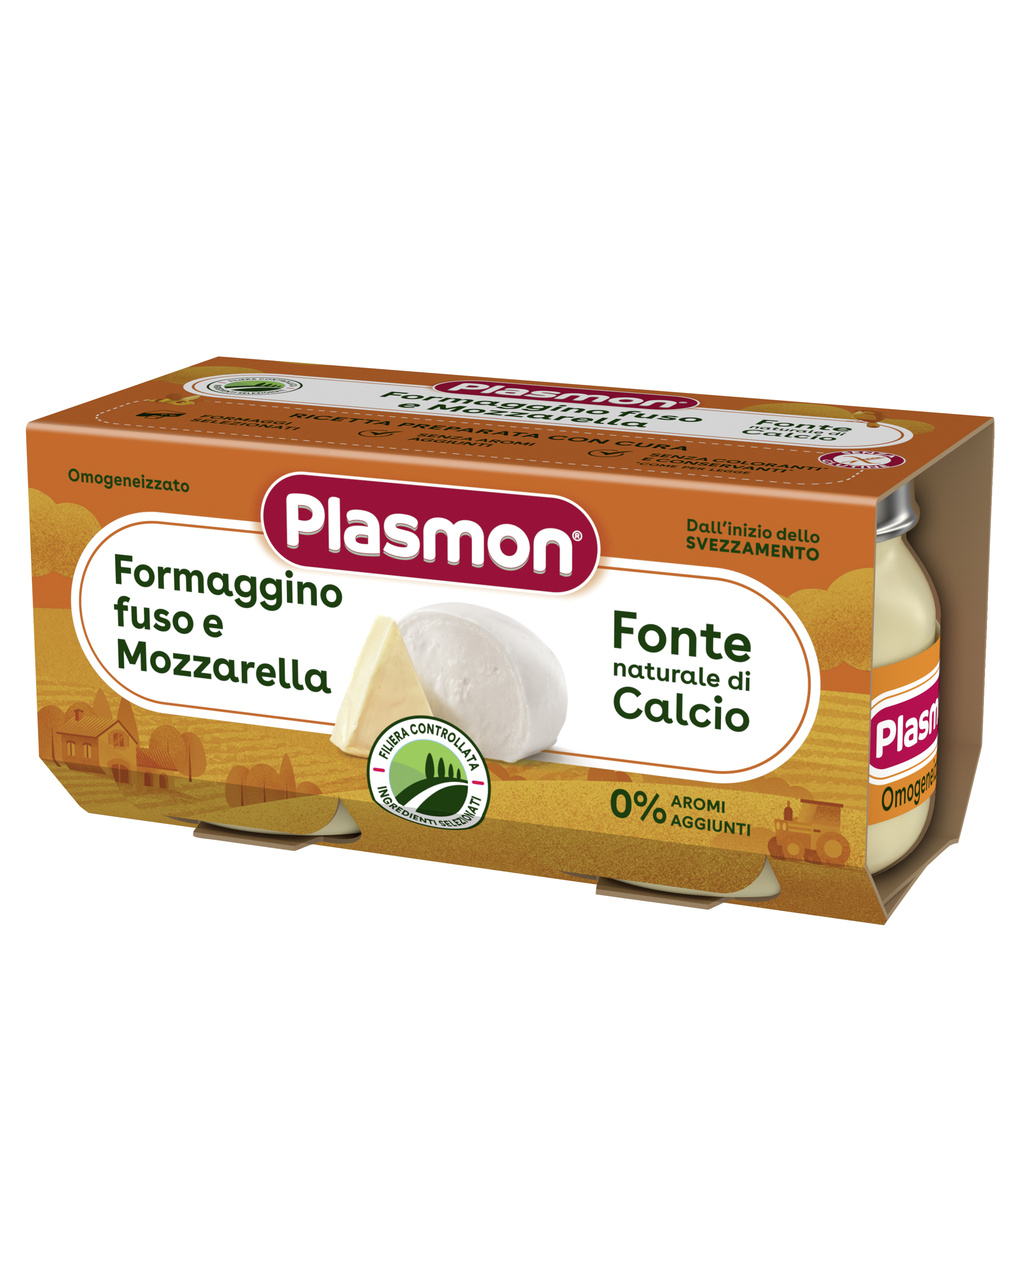 Plasmon – omogeneizzato formaggino fuso e mozzarella 2x80g